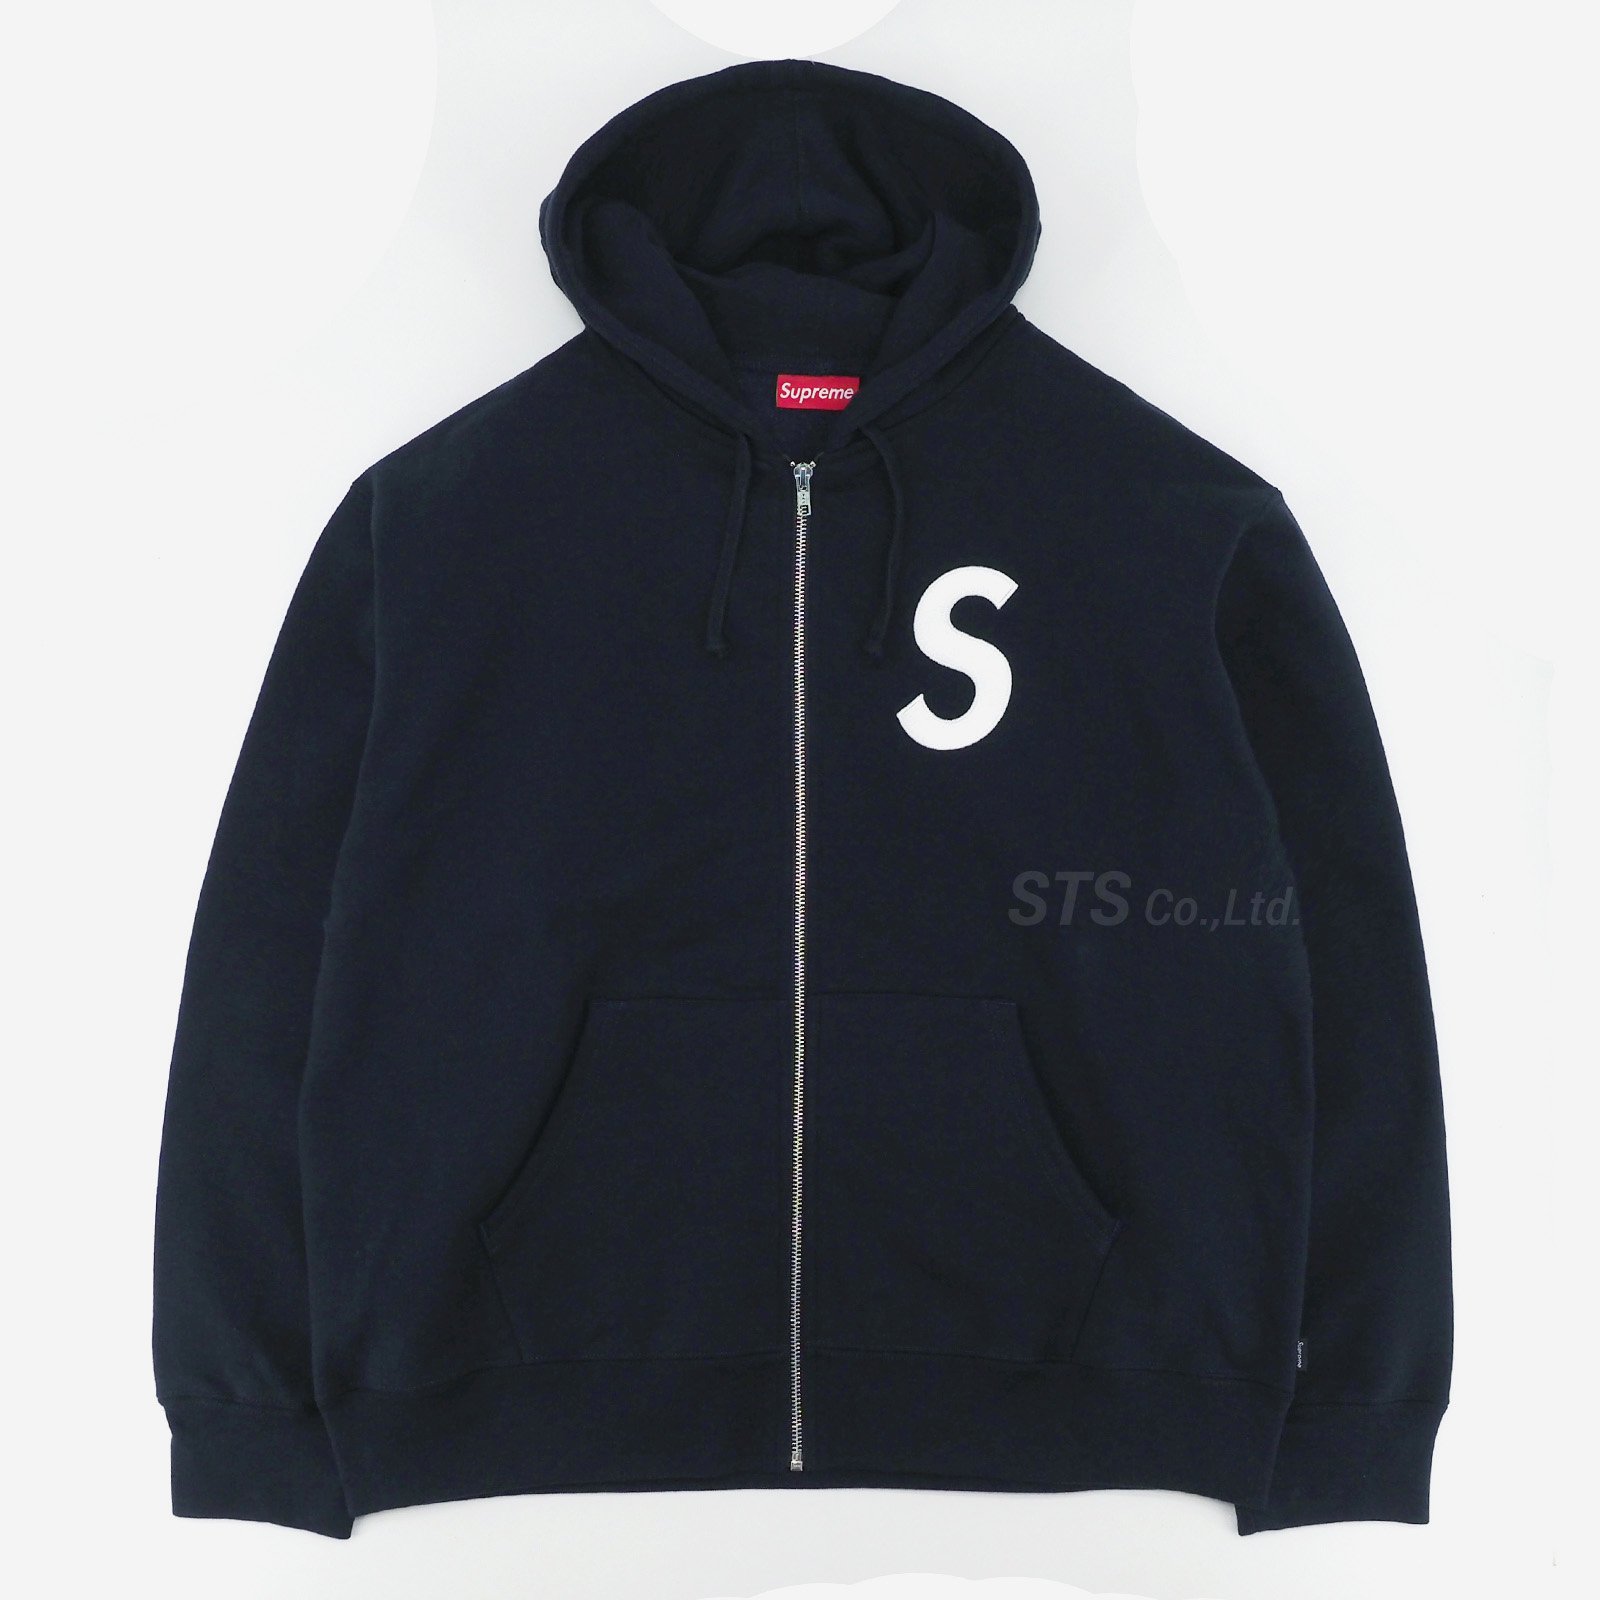 色navysupreme S logo zip up Sweatshirt sizeL - パーカー